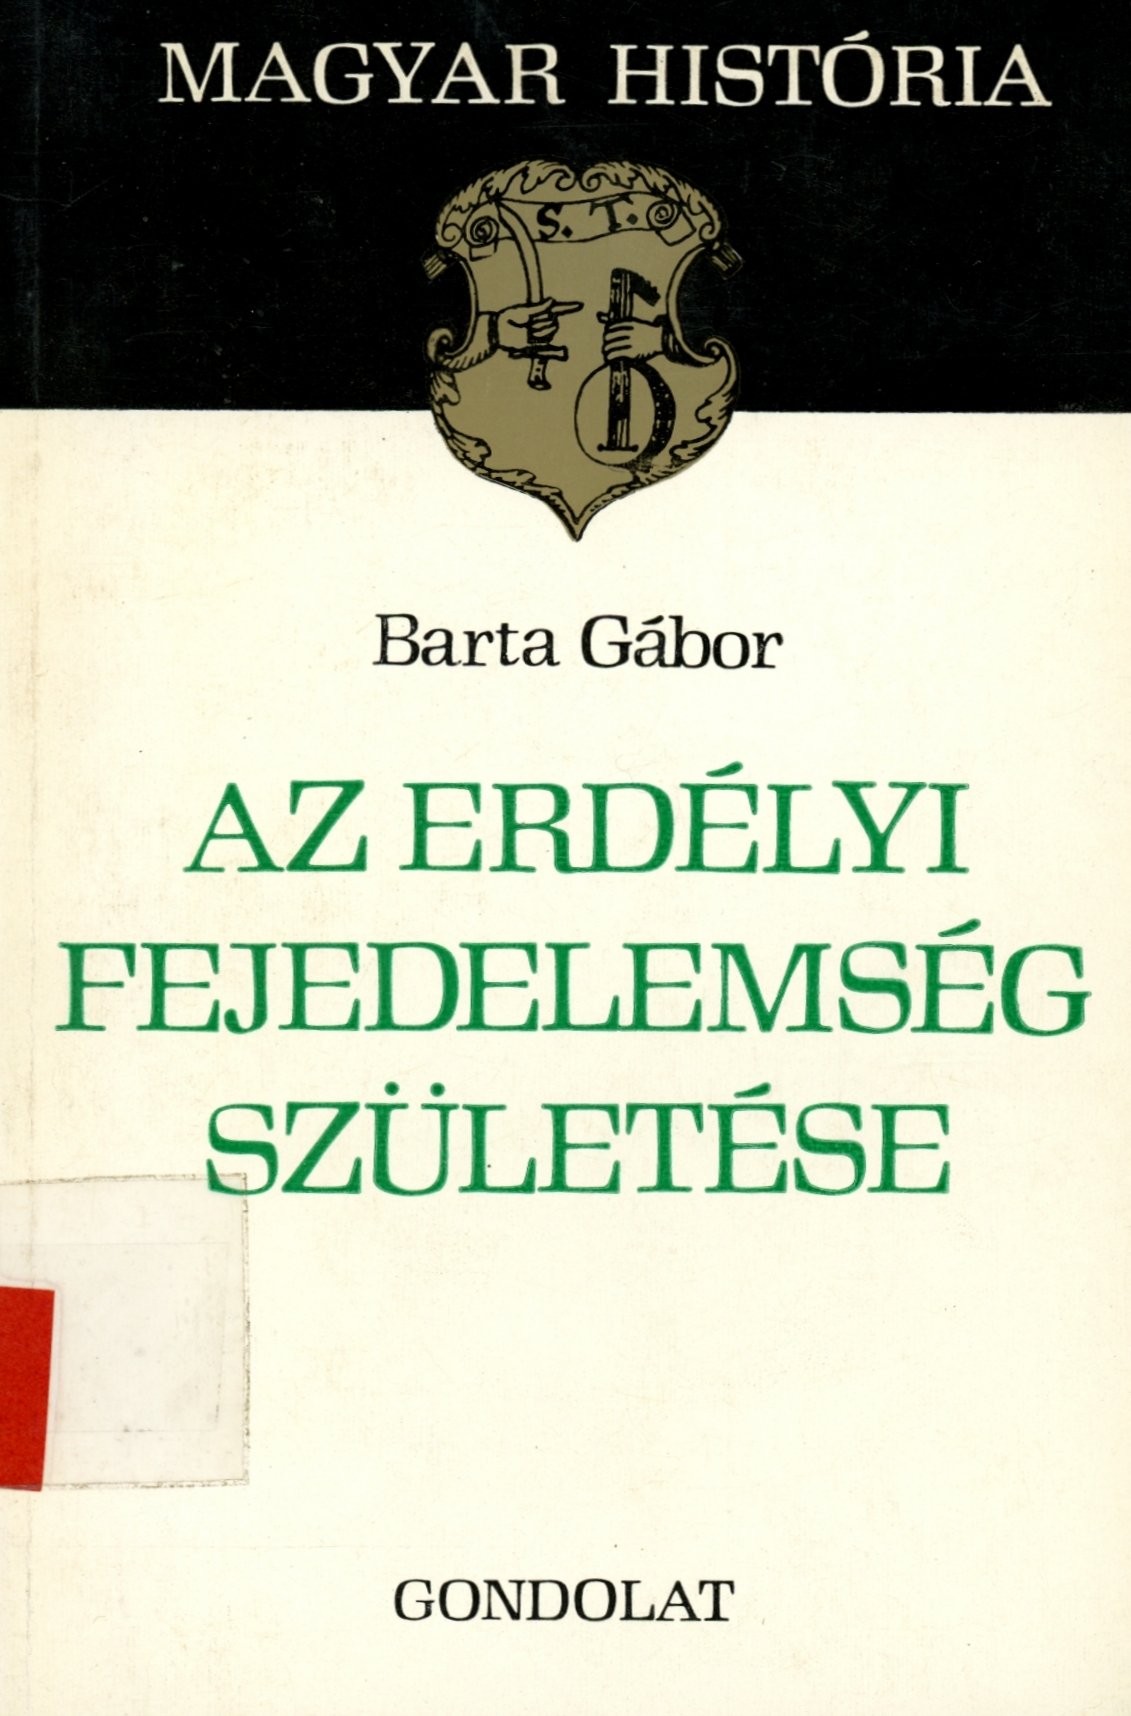 Barta Gábor (Erkel Ferenc Múzeum és Könyvtár, Gyula CC BY-NC-SA)